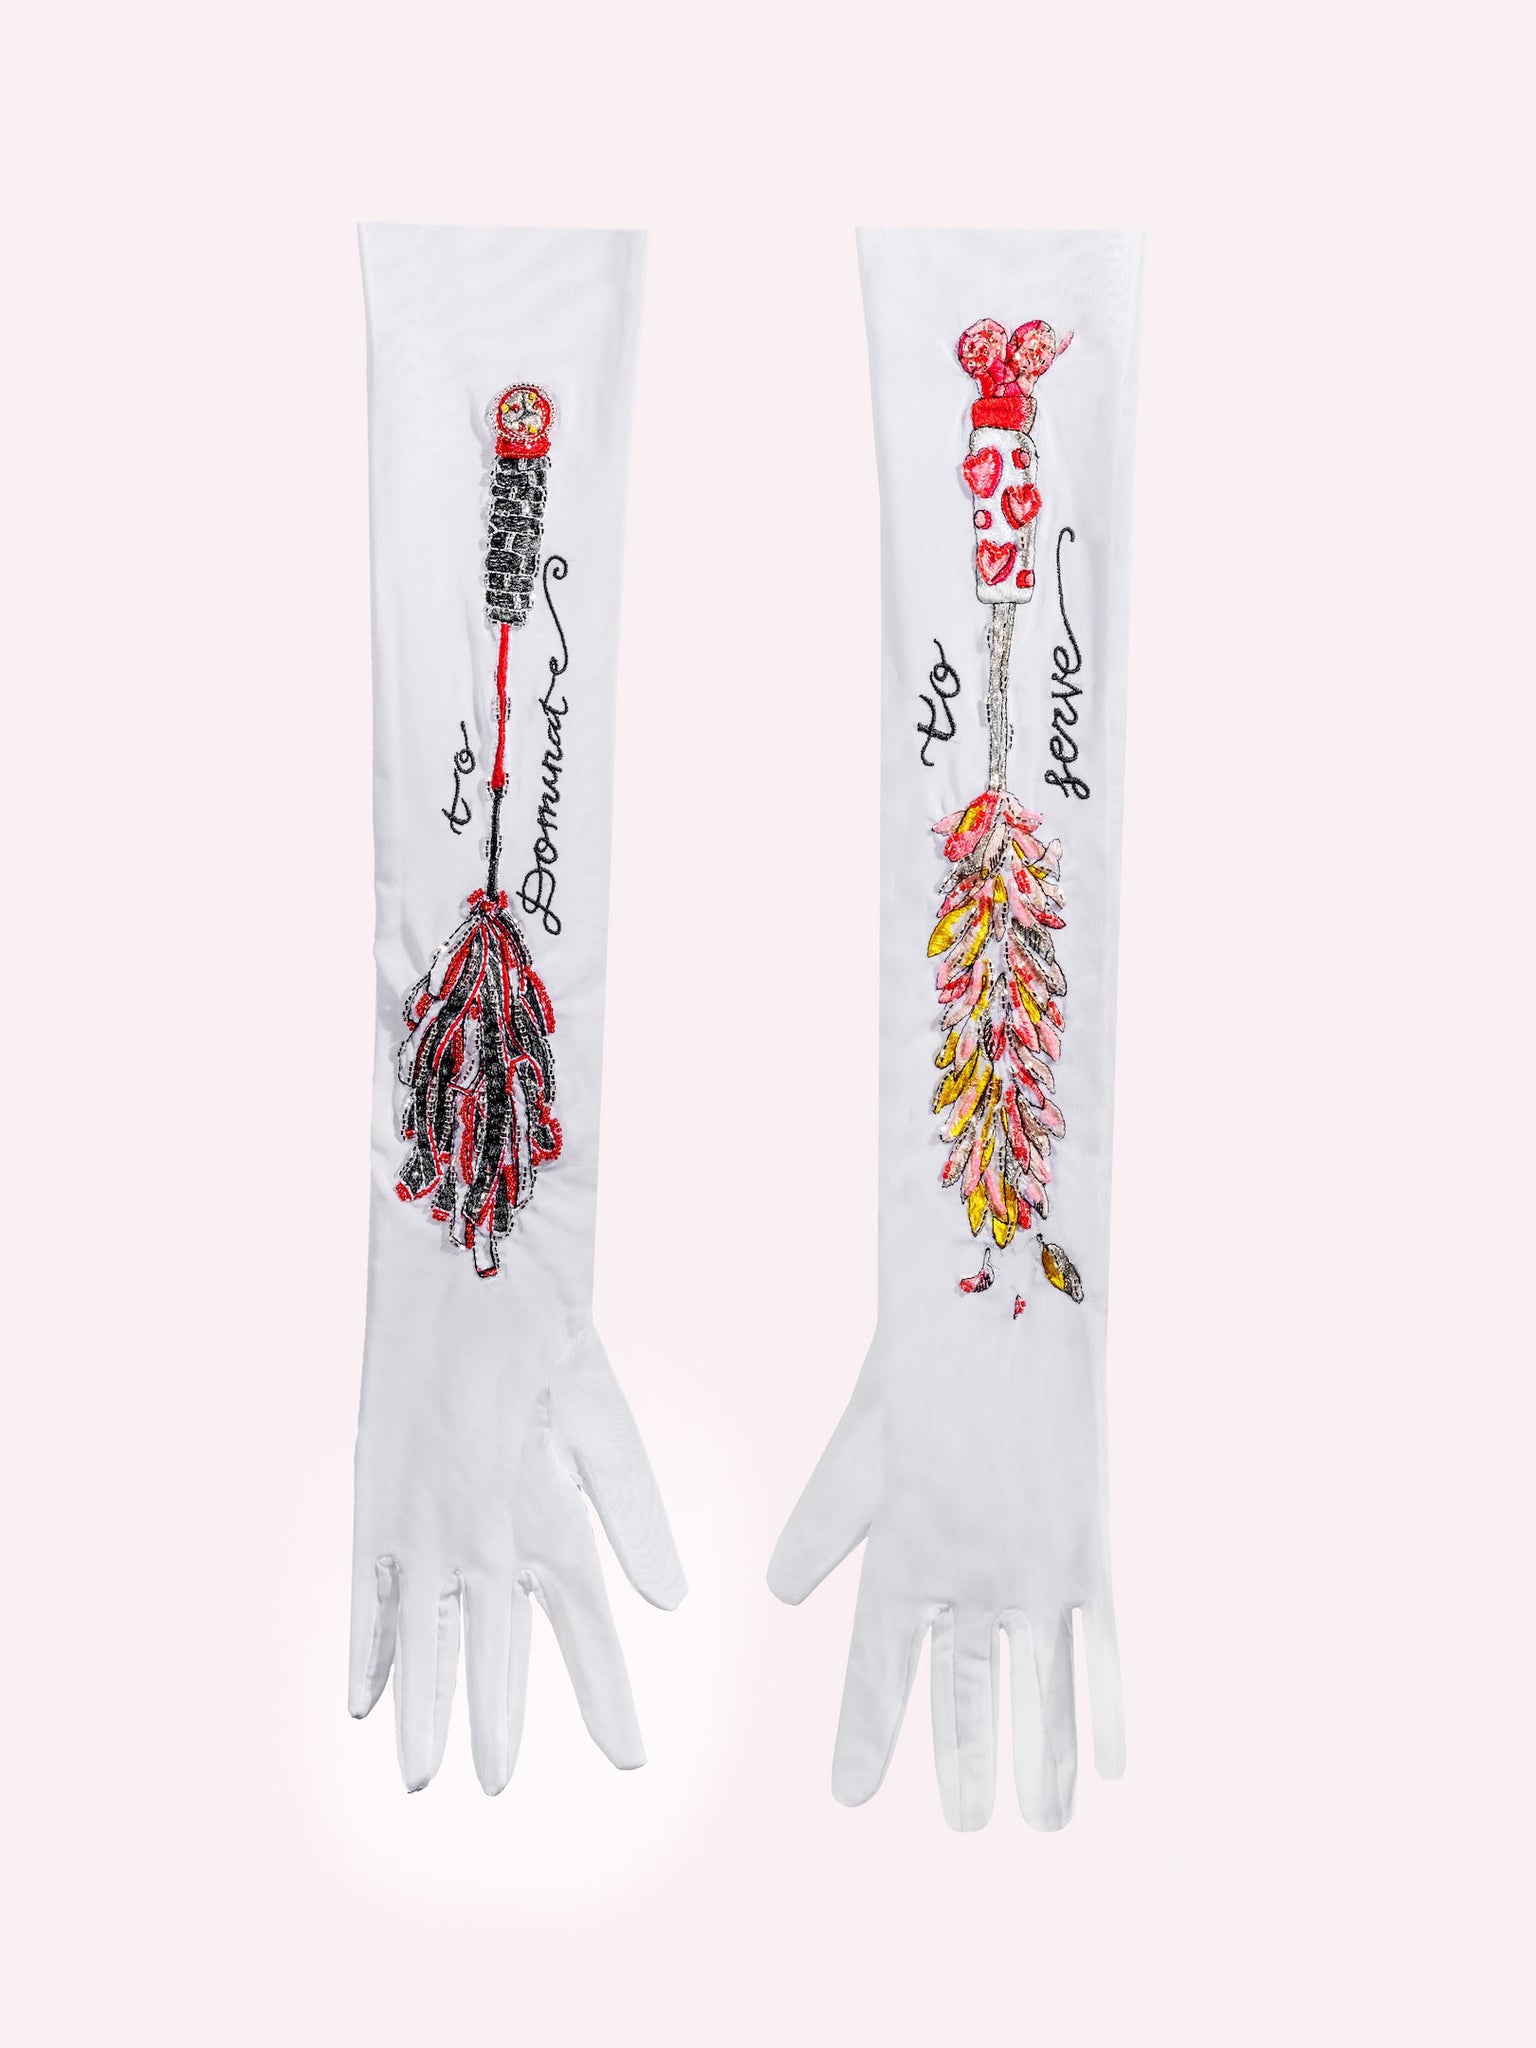 Maid's Gloves